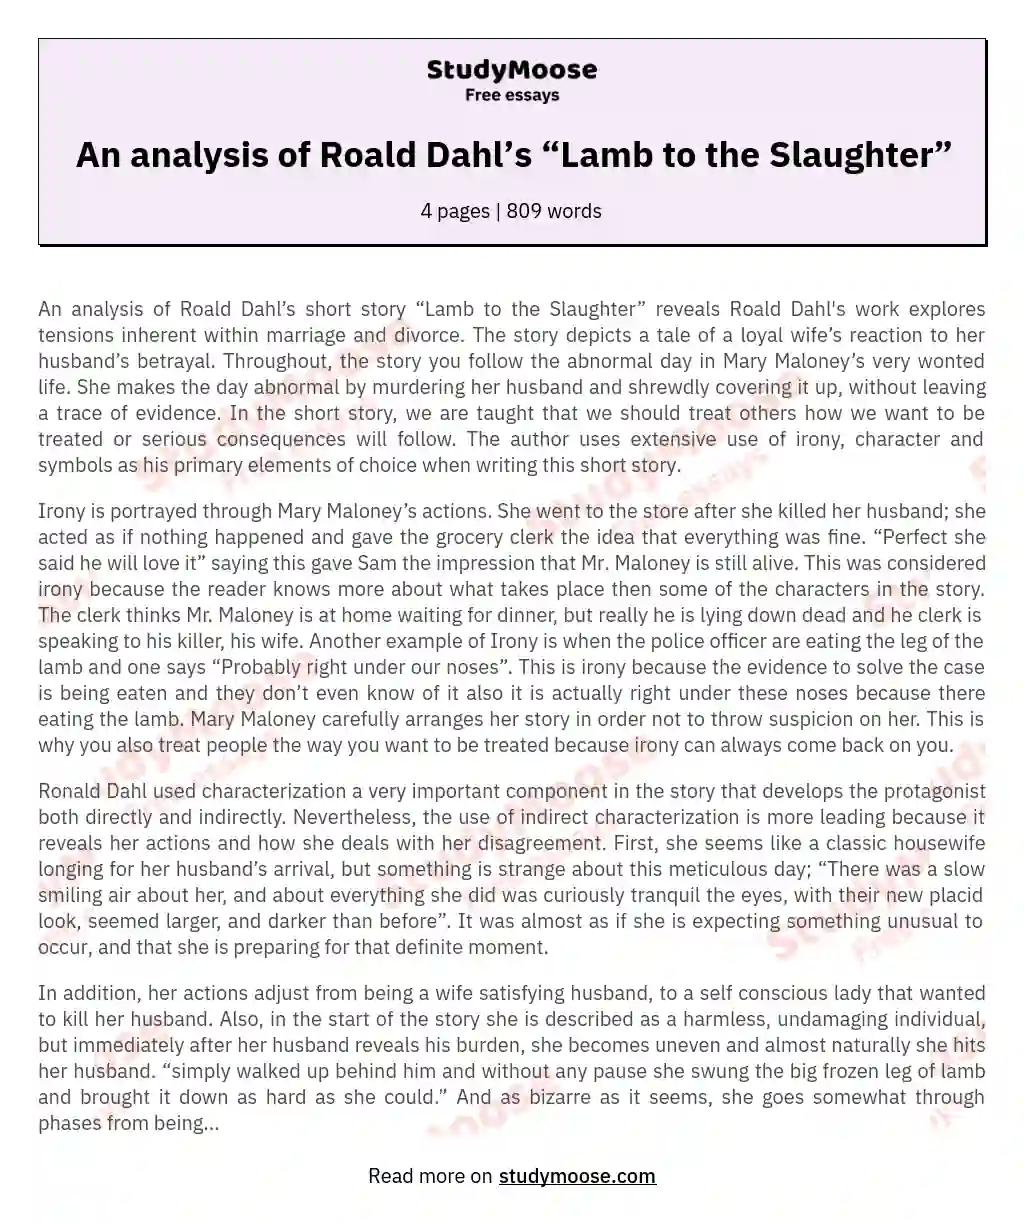 An analysis of Roald Dahl’s “Lamb to the Slaughter”